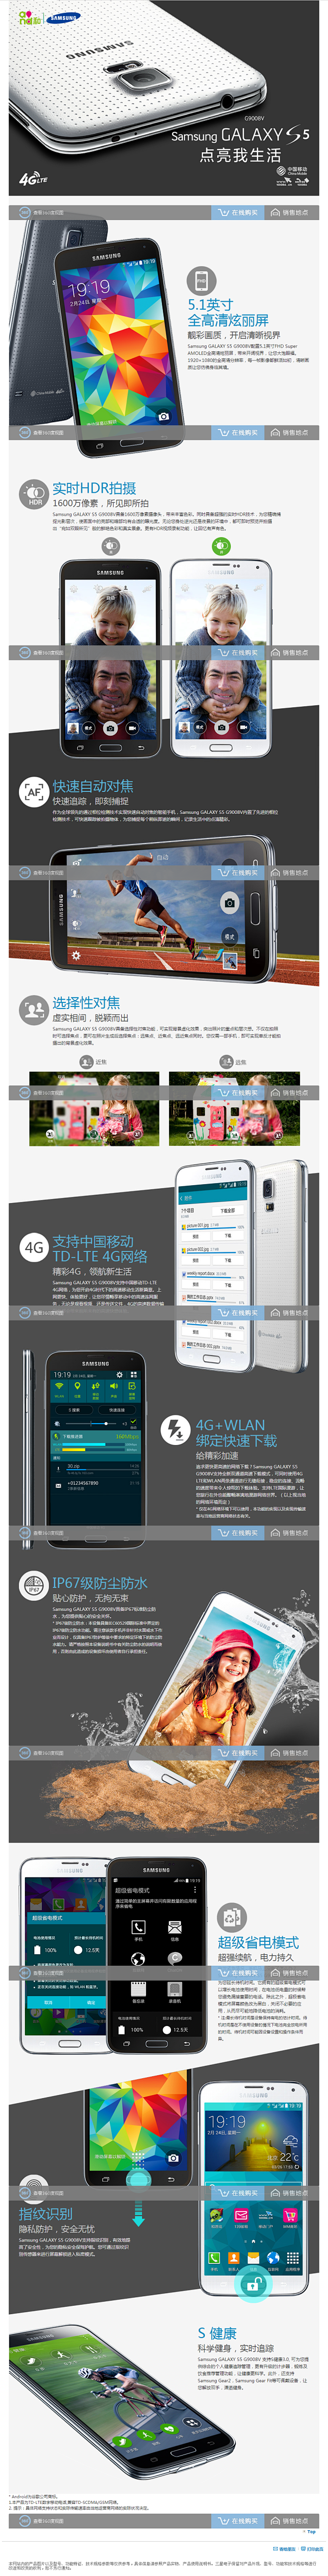 Samsung GALAXY S5 手机...